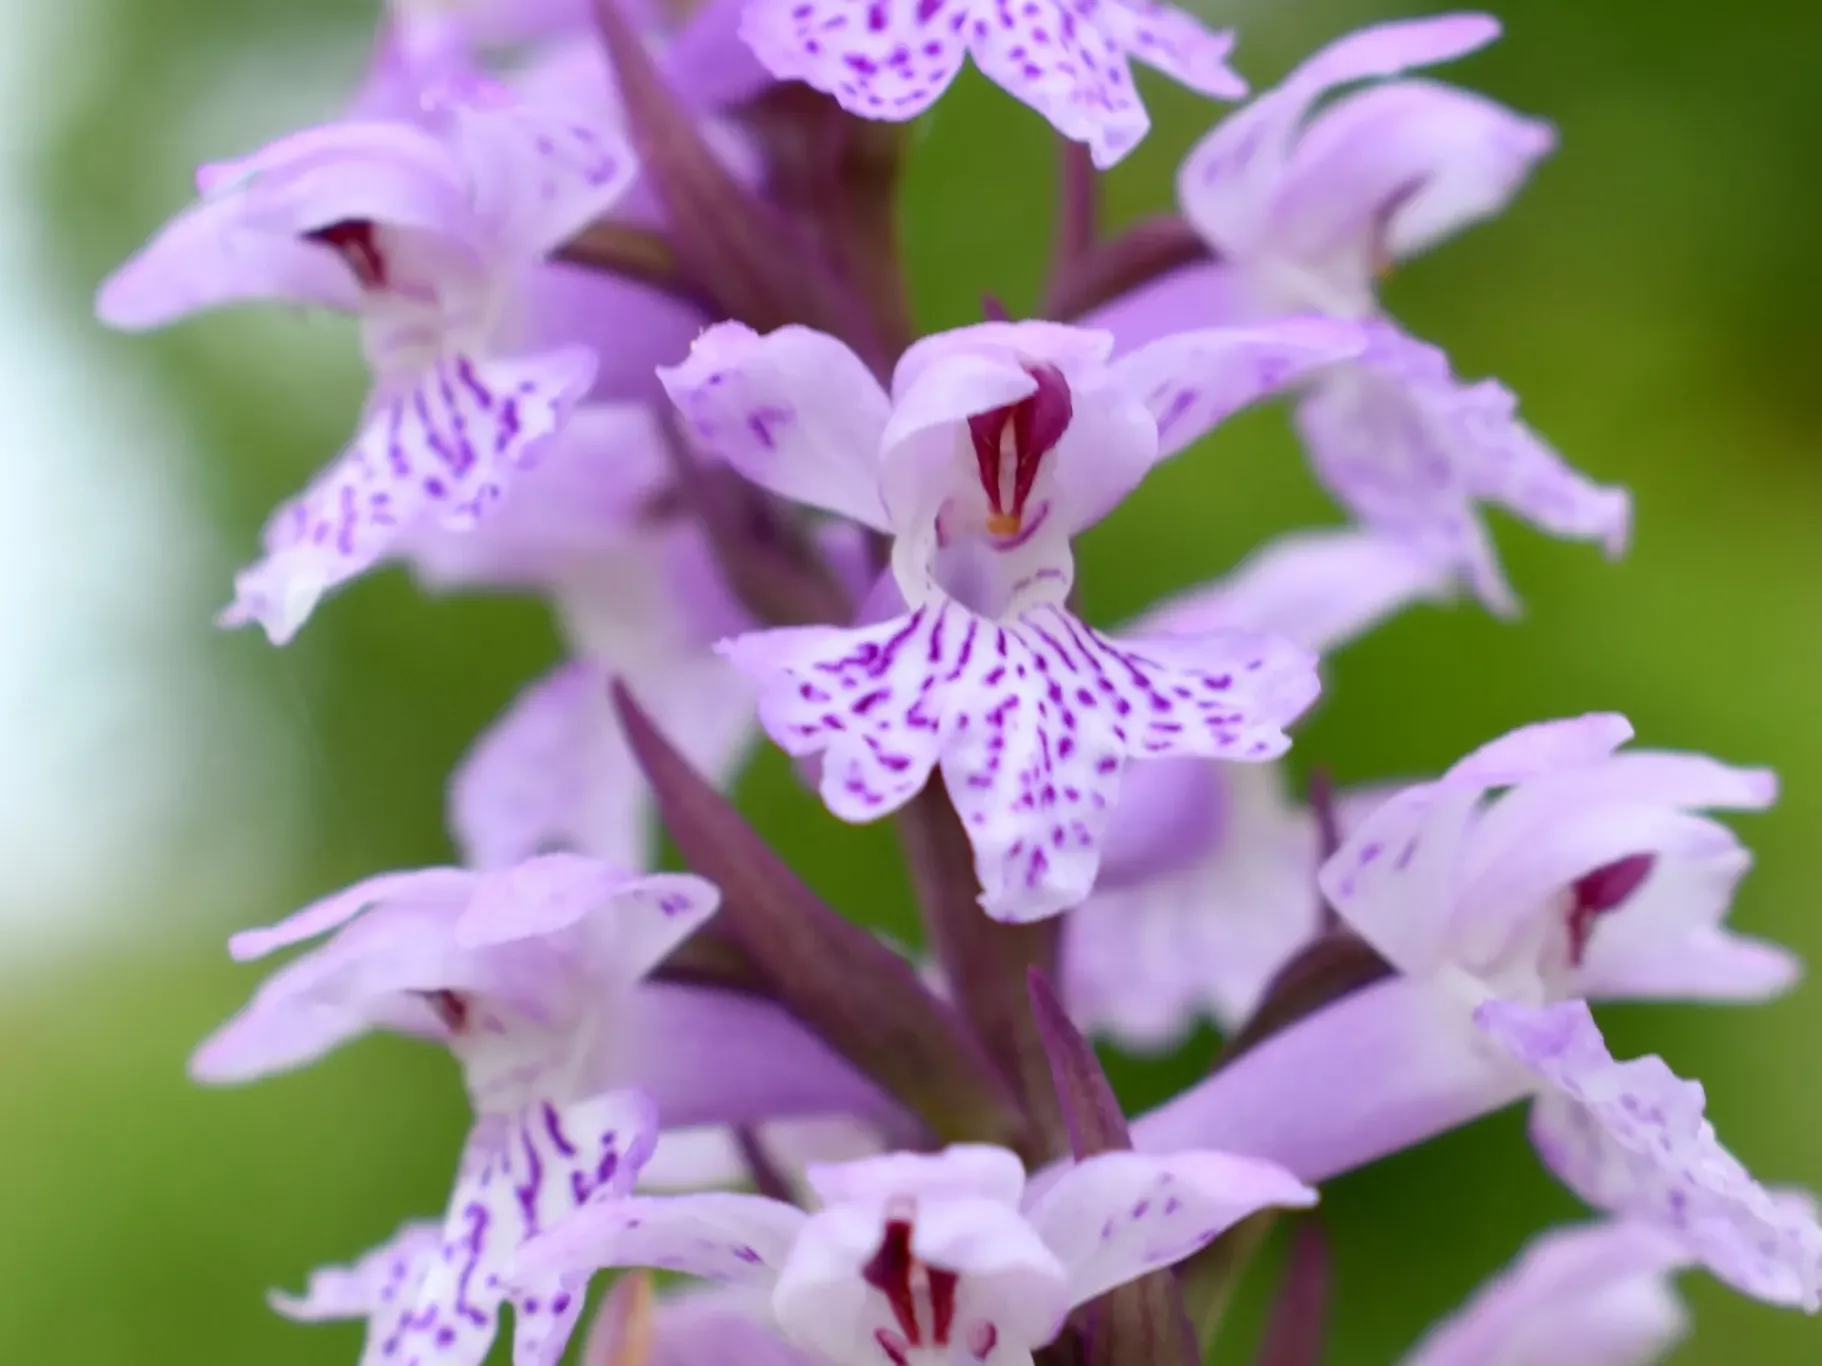 Alberi monumentali, piante aromatiche e alimurgiche, orchidee spontanee – Parco Nazionale del Pollino